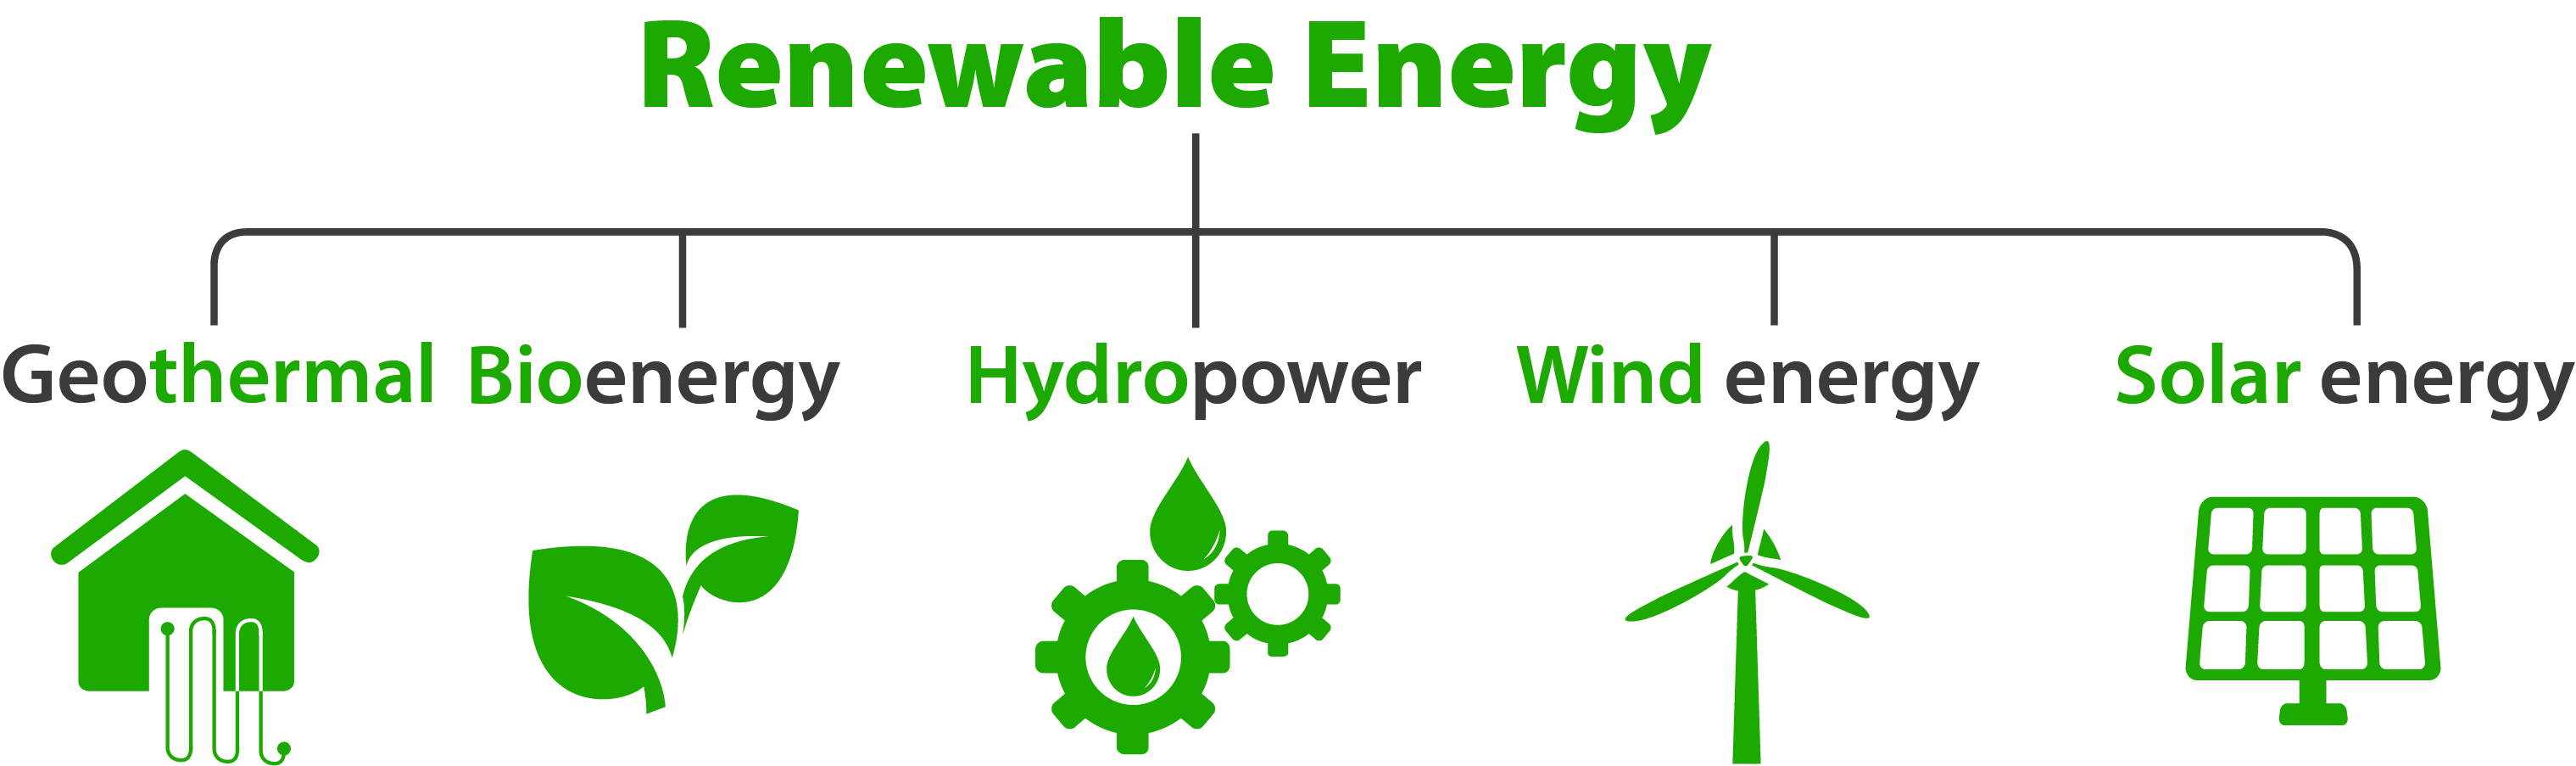 Overview of renewable energies